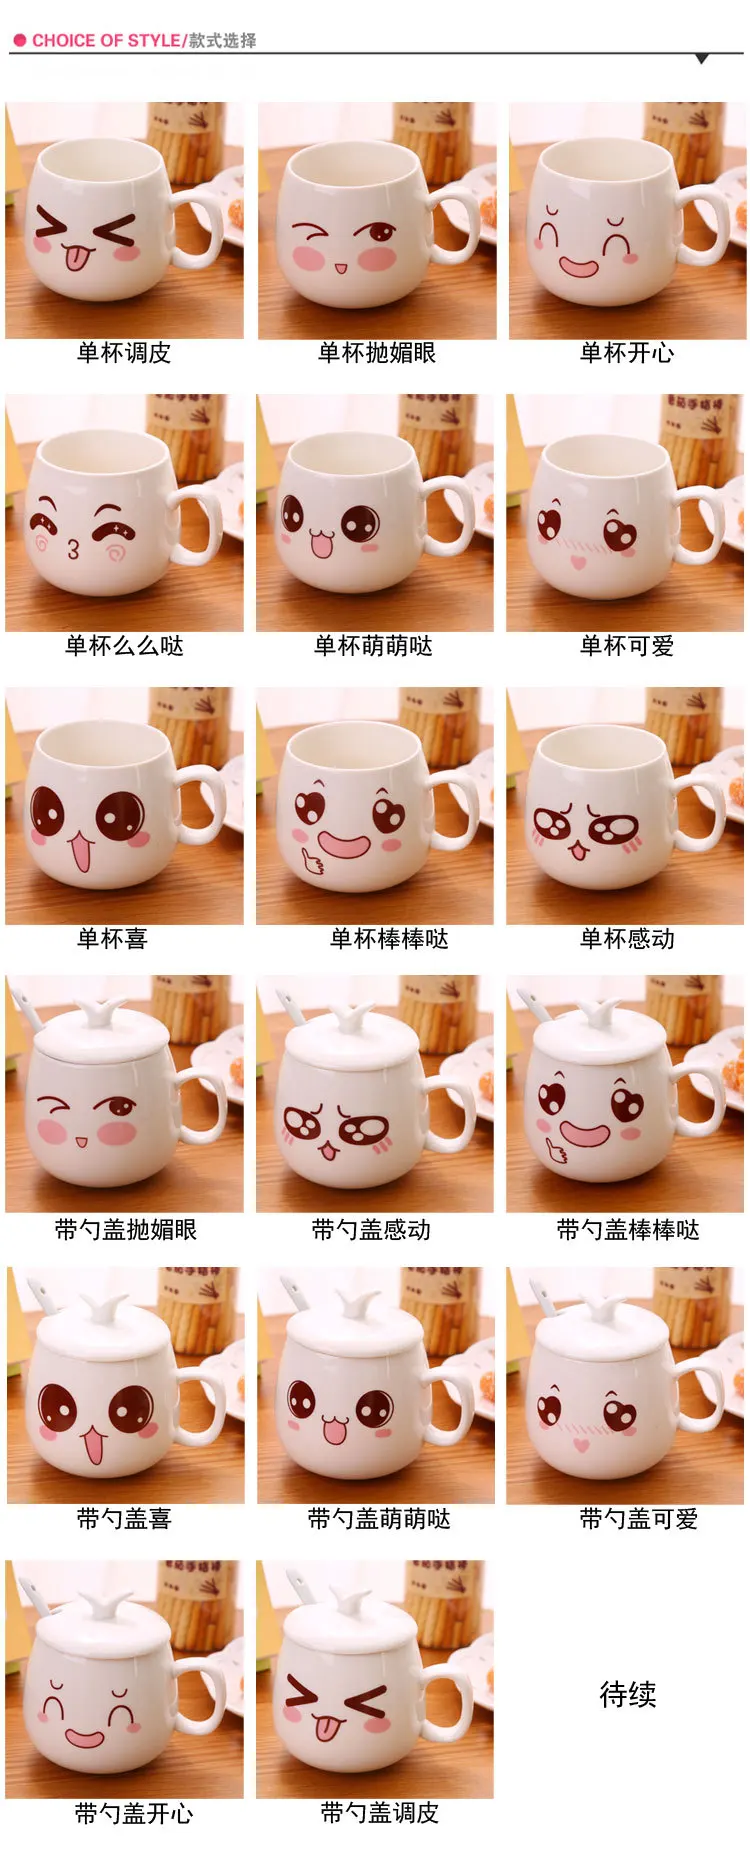 VILEAD кофейная кружка смайлик кружка креативная чашка лицо чашка мультфильм лицо с рукояткой 320 мл чашка компьютер кружка новинка милые кружки для кофе